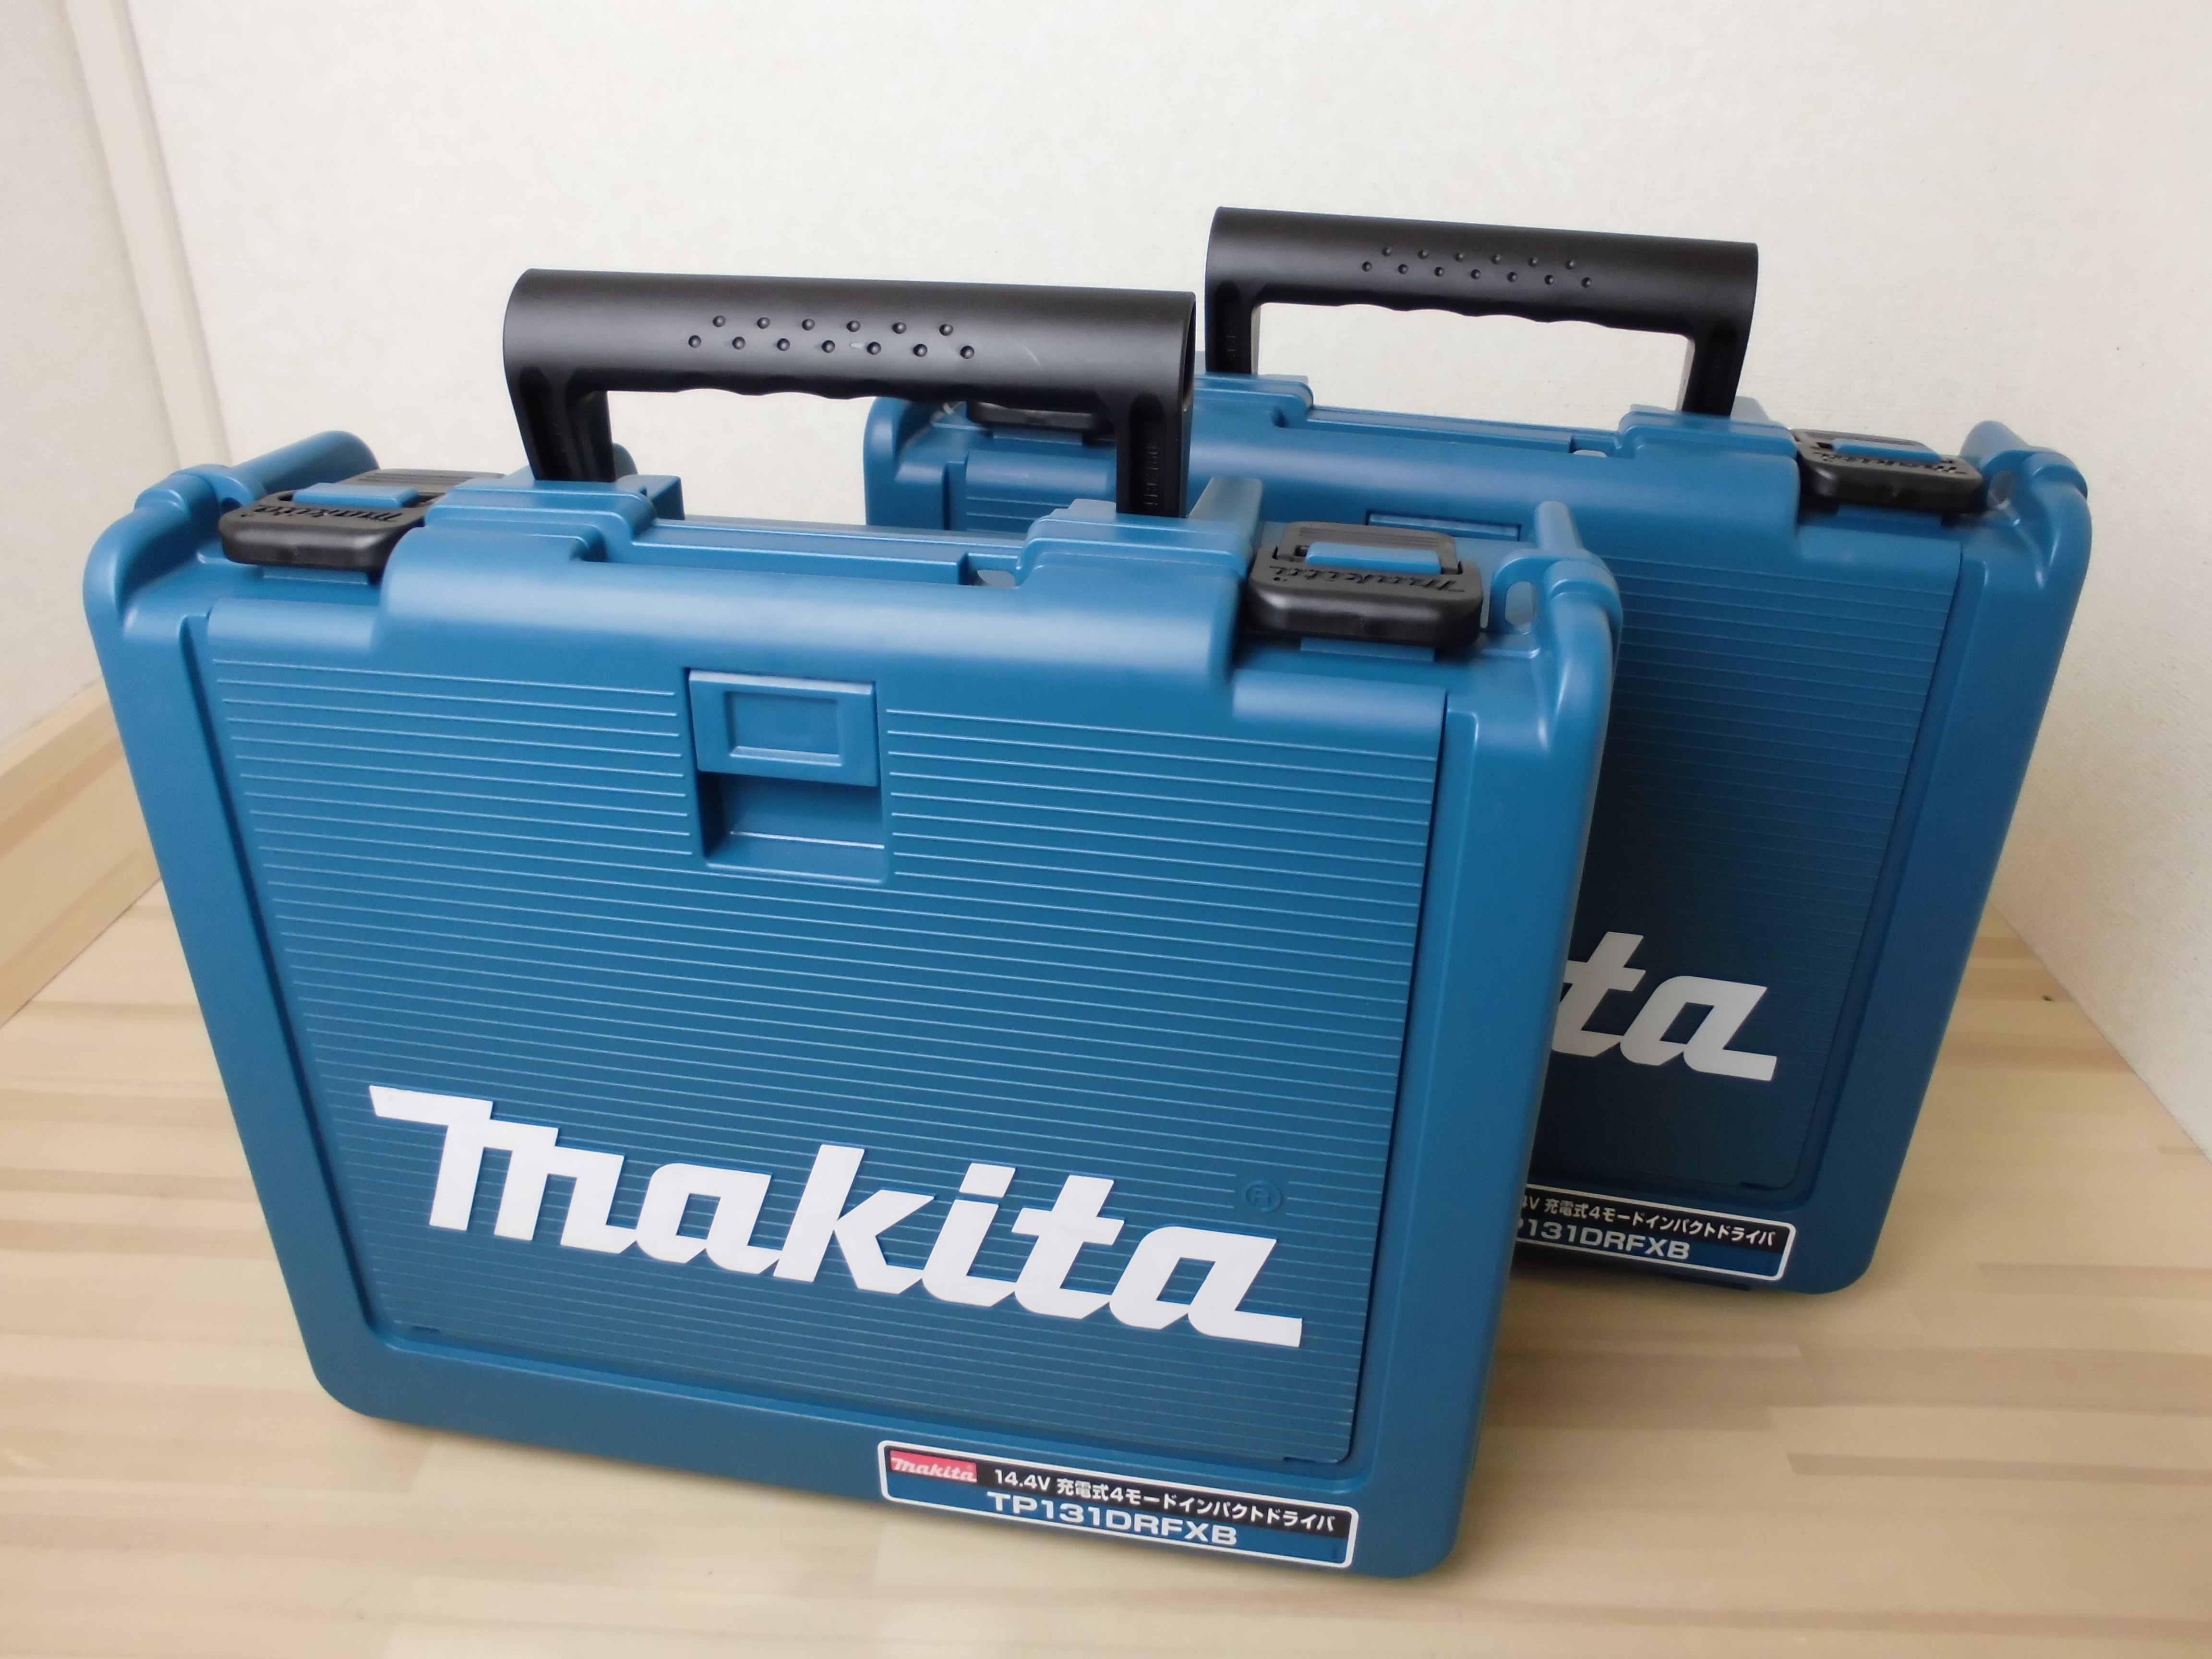 ☆比較的綺麗☆makita マキタ 18V 充電式インパクトドライバ TD147DRFX 3.0Ahバッテリー2個(BL1830) 充電器(DC18RC) ケース付 64276